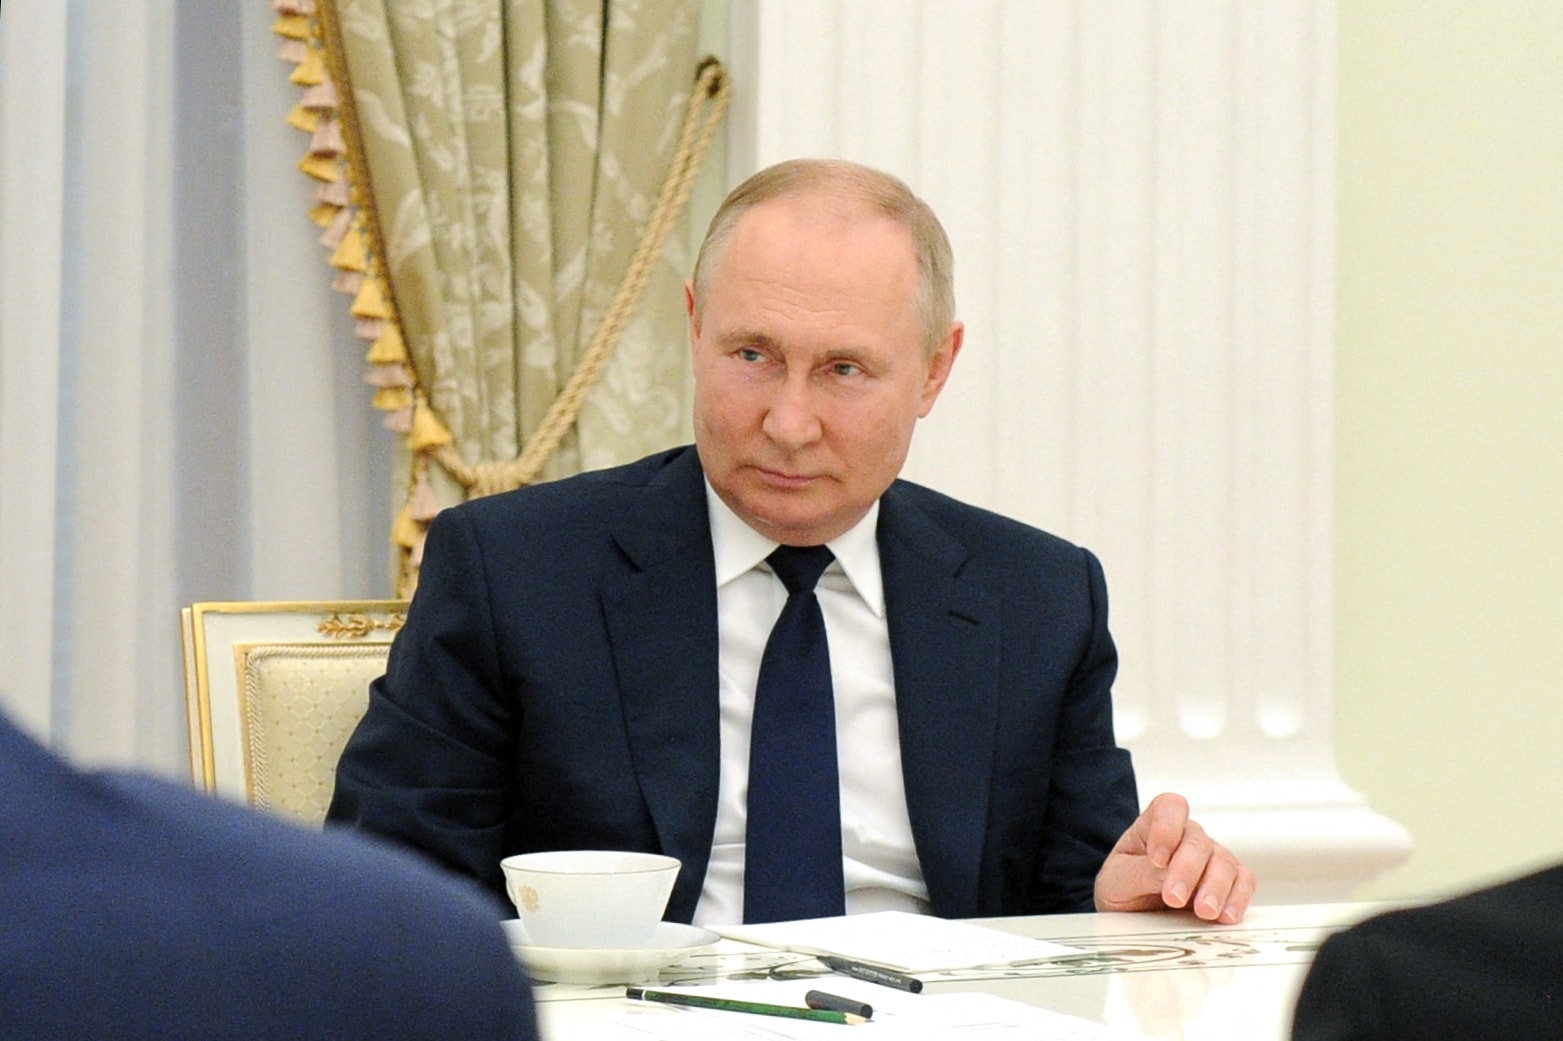 'Wishful Thinking': UK Military Chief On Putin Health Rumours